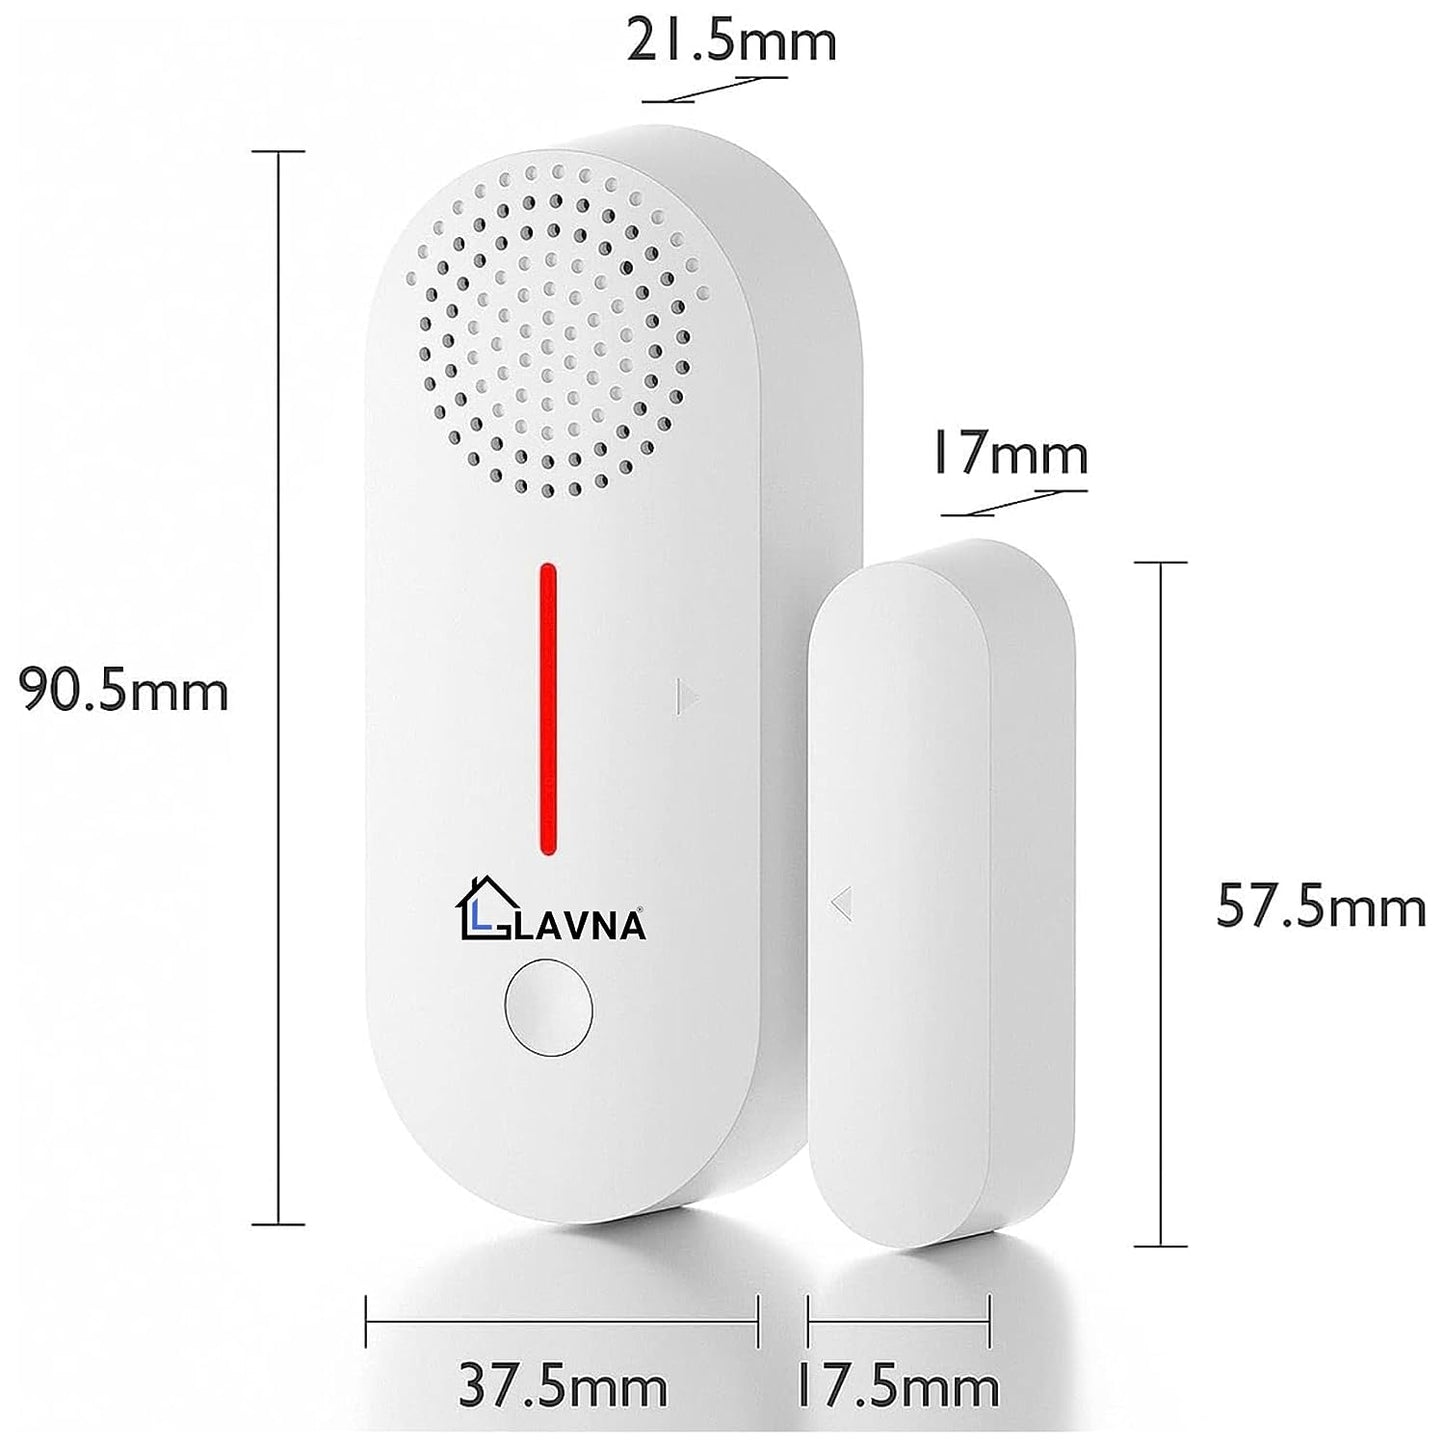 LAVNA Wi-Fi Door Sensor with Alarm for Doors or Window